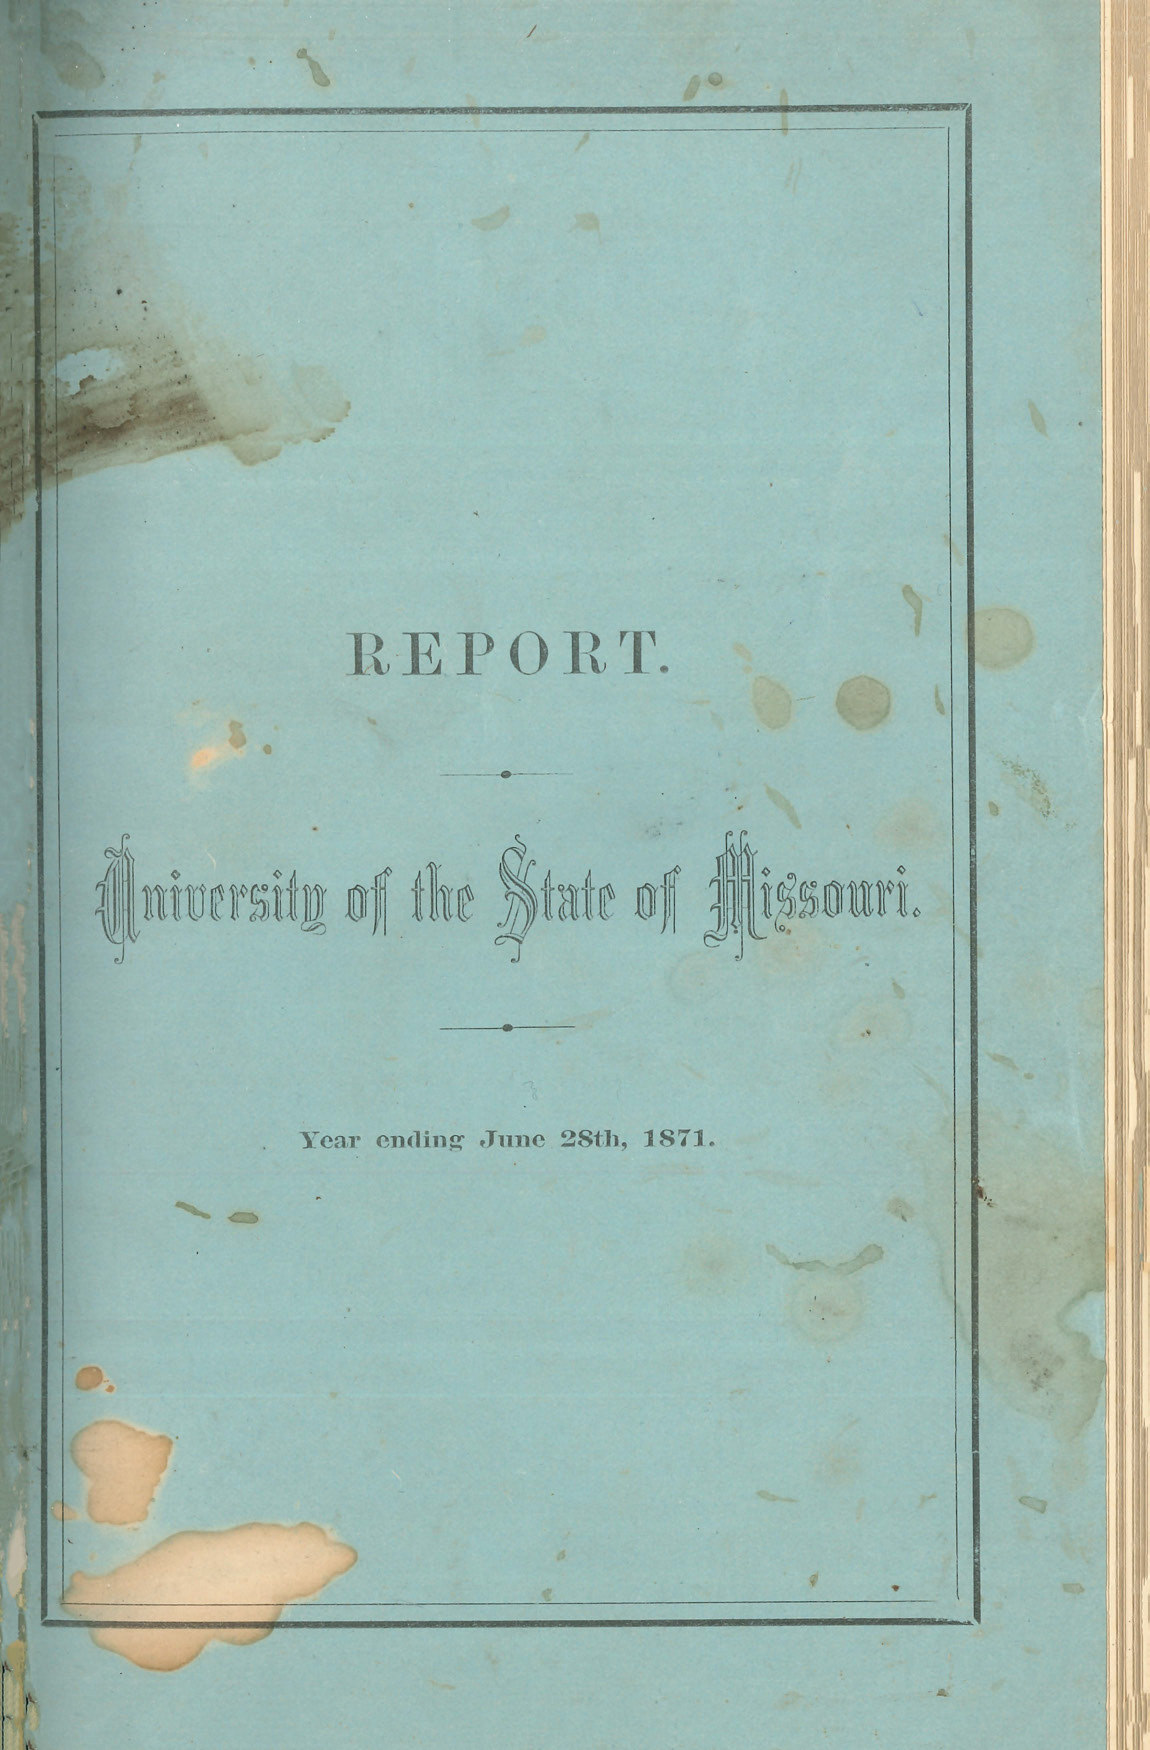 MU-Catalog-1871-Announcements-1871-cover.jpg